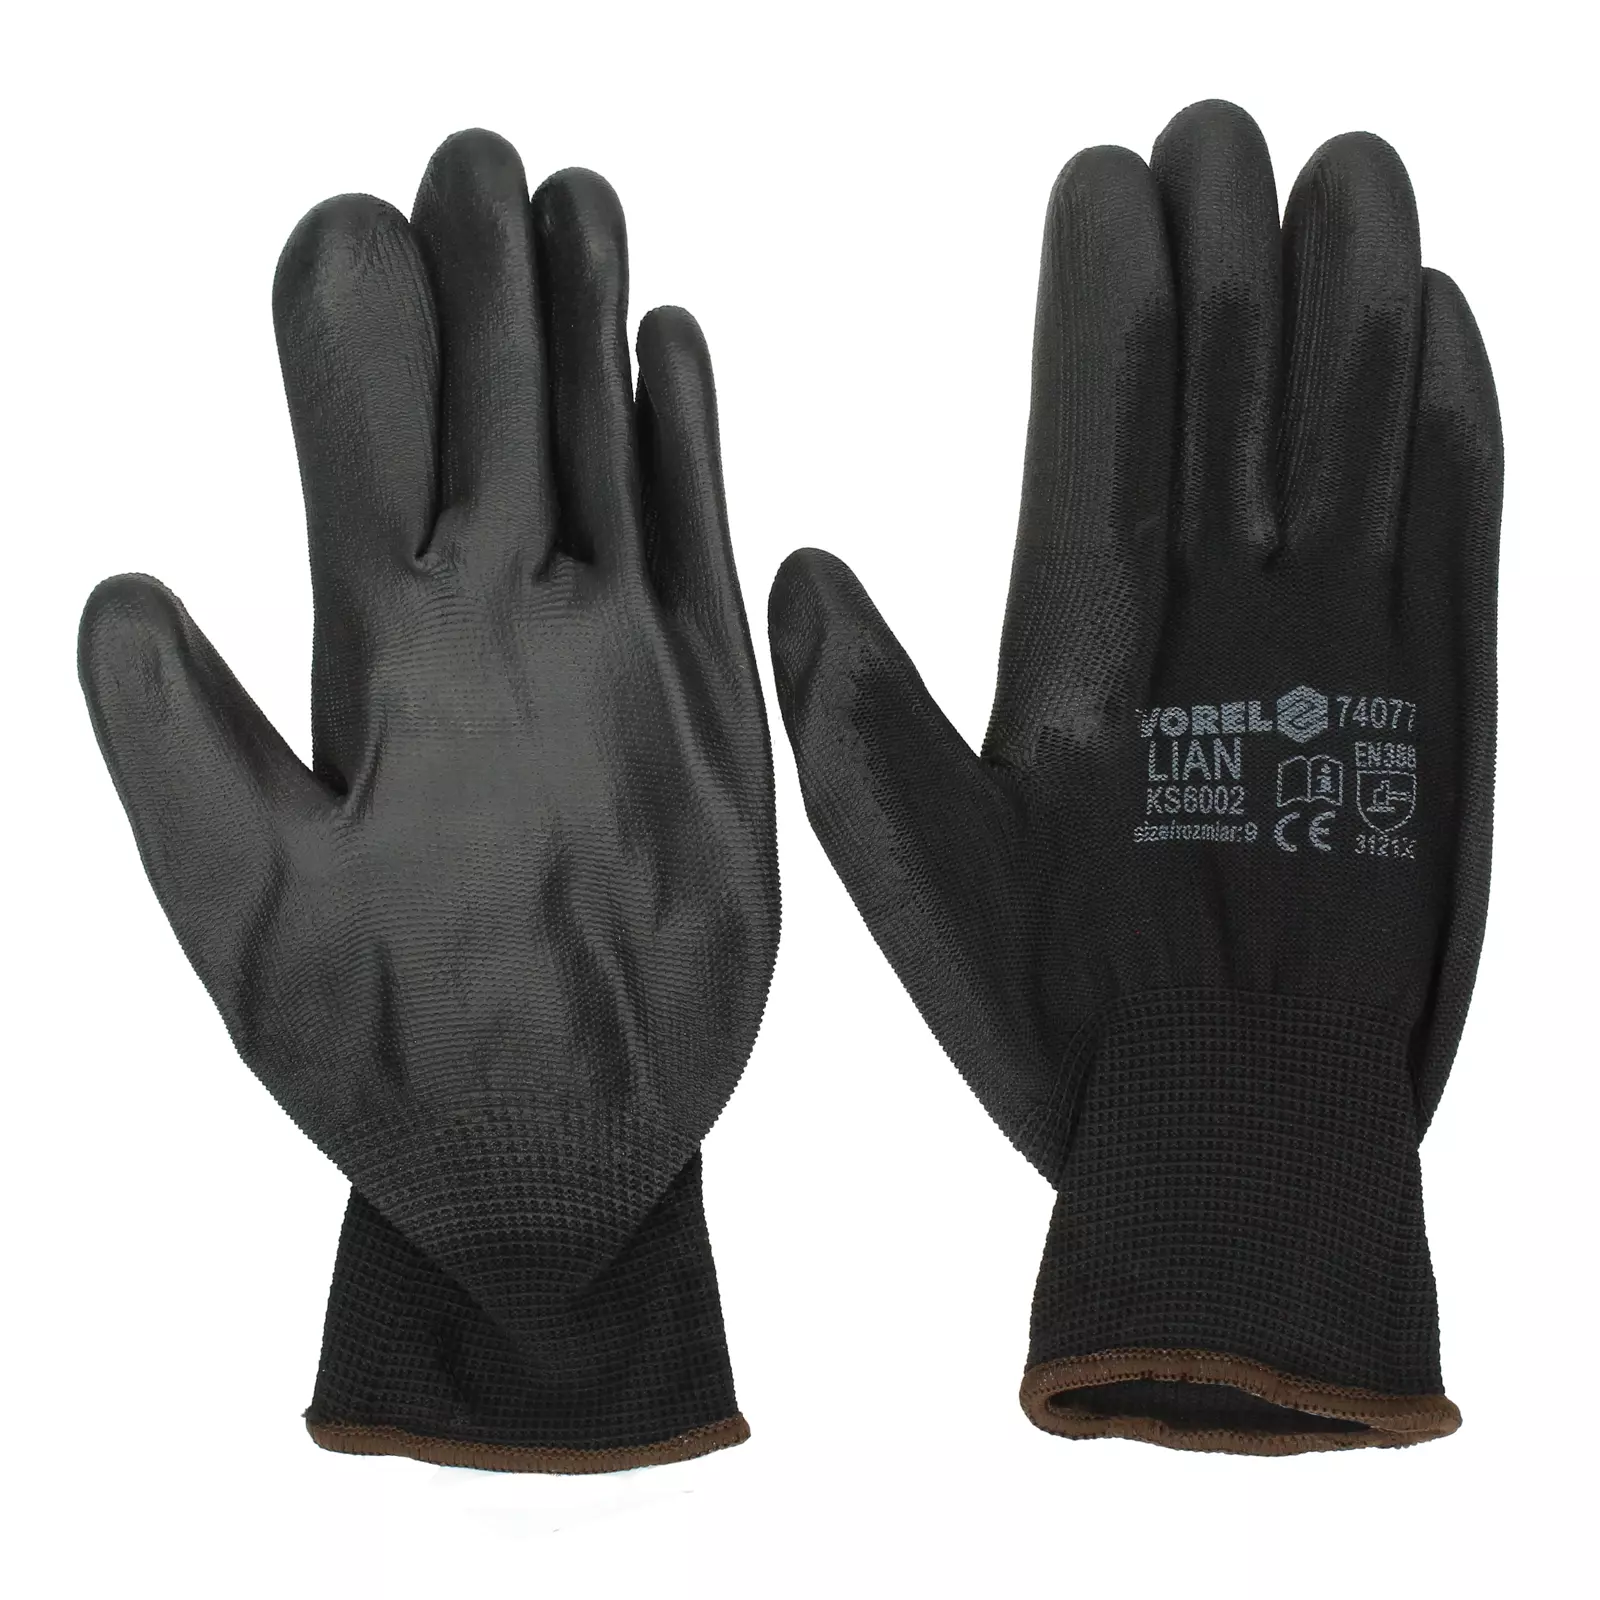 VOREL protective work gloves